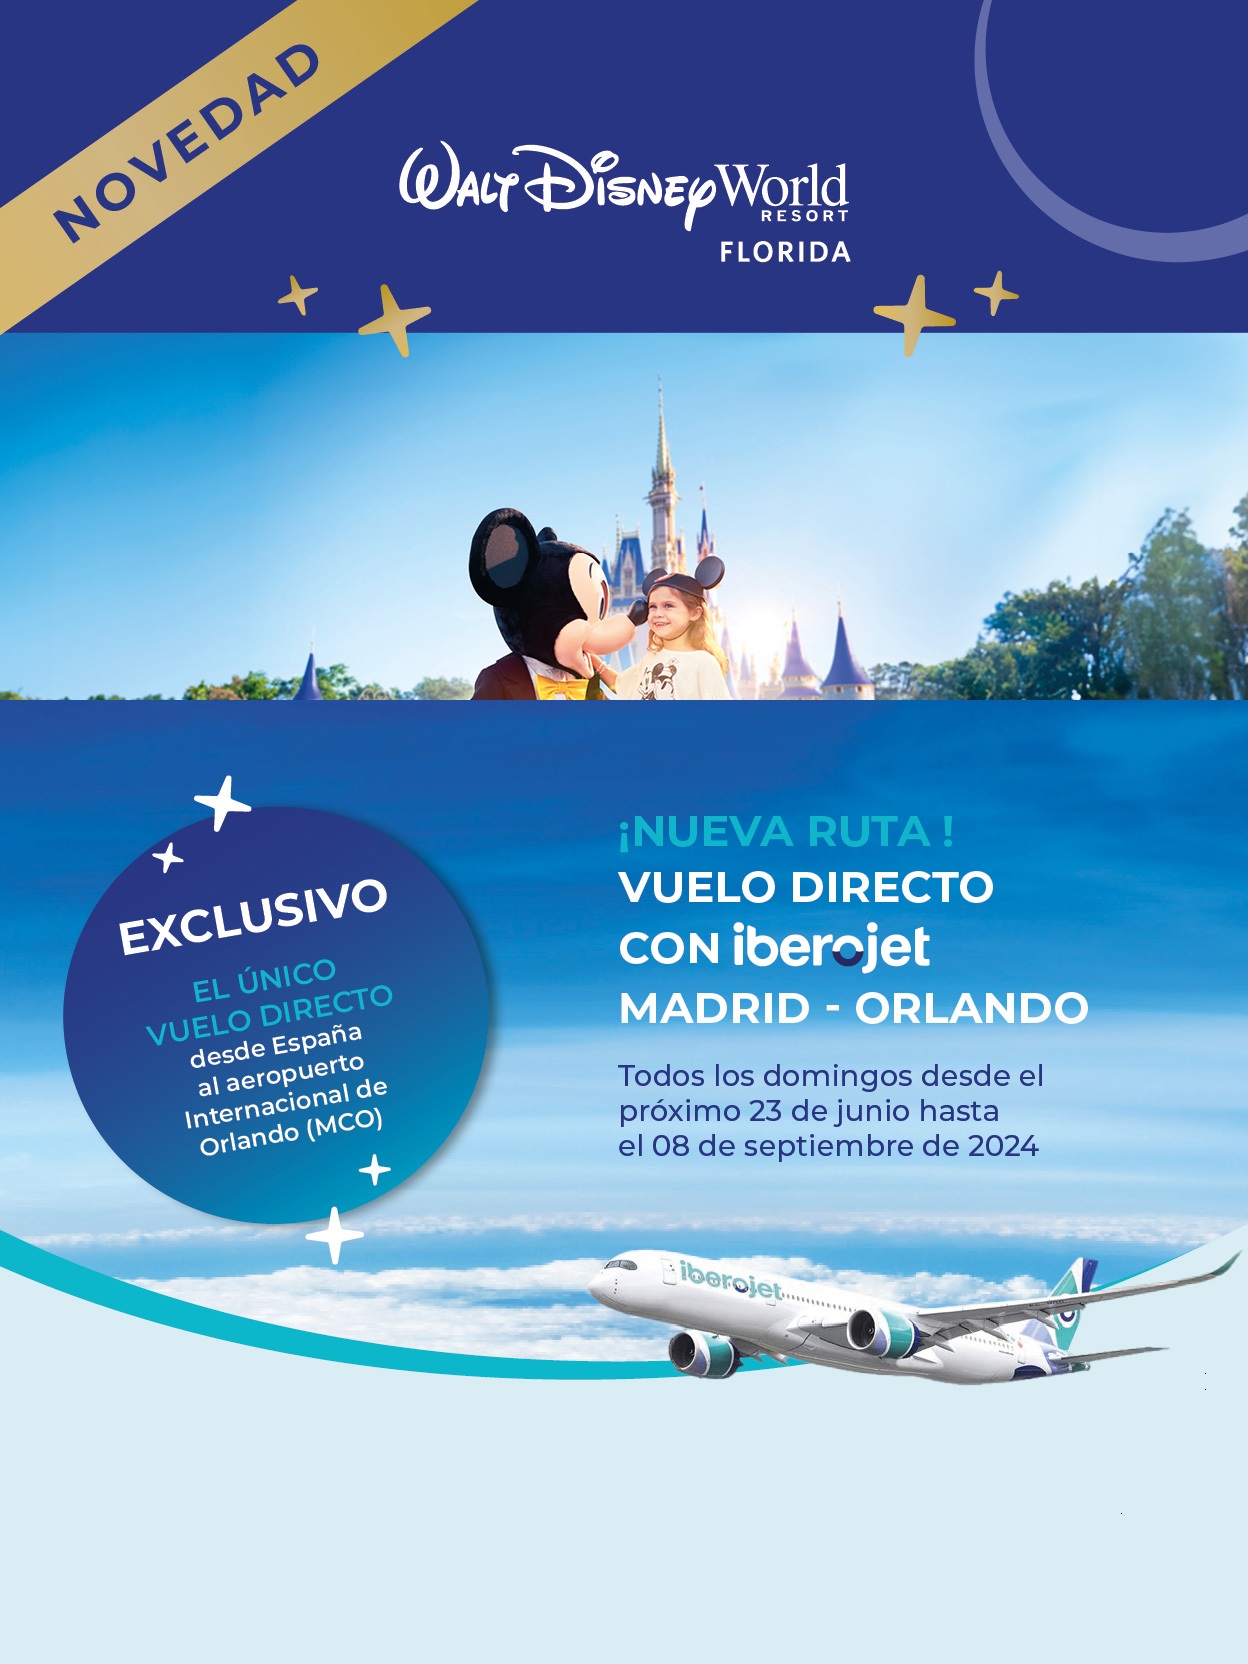 Oferta Touring Club Junio a Septiembre 2024 Walt Disney World Resort Hoteles y Entradas con Vuelo directo a Orlando desde Madrid ext